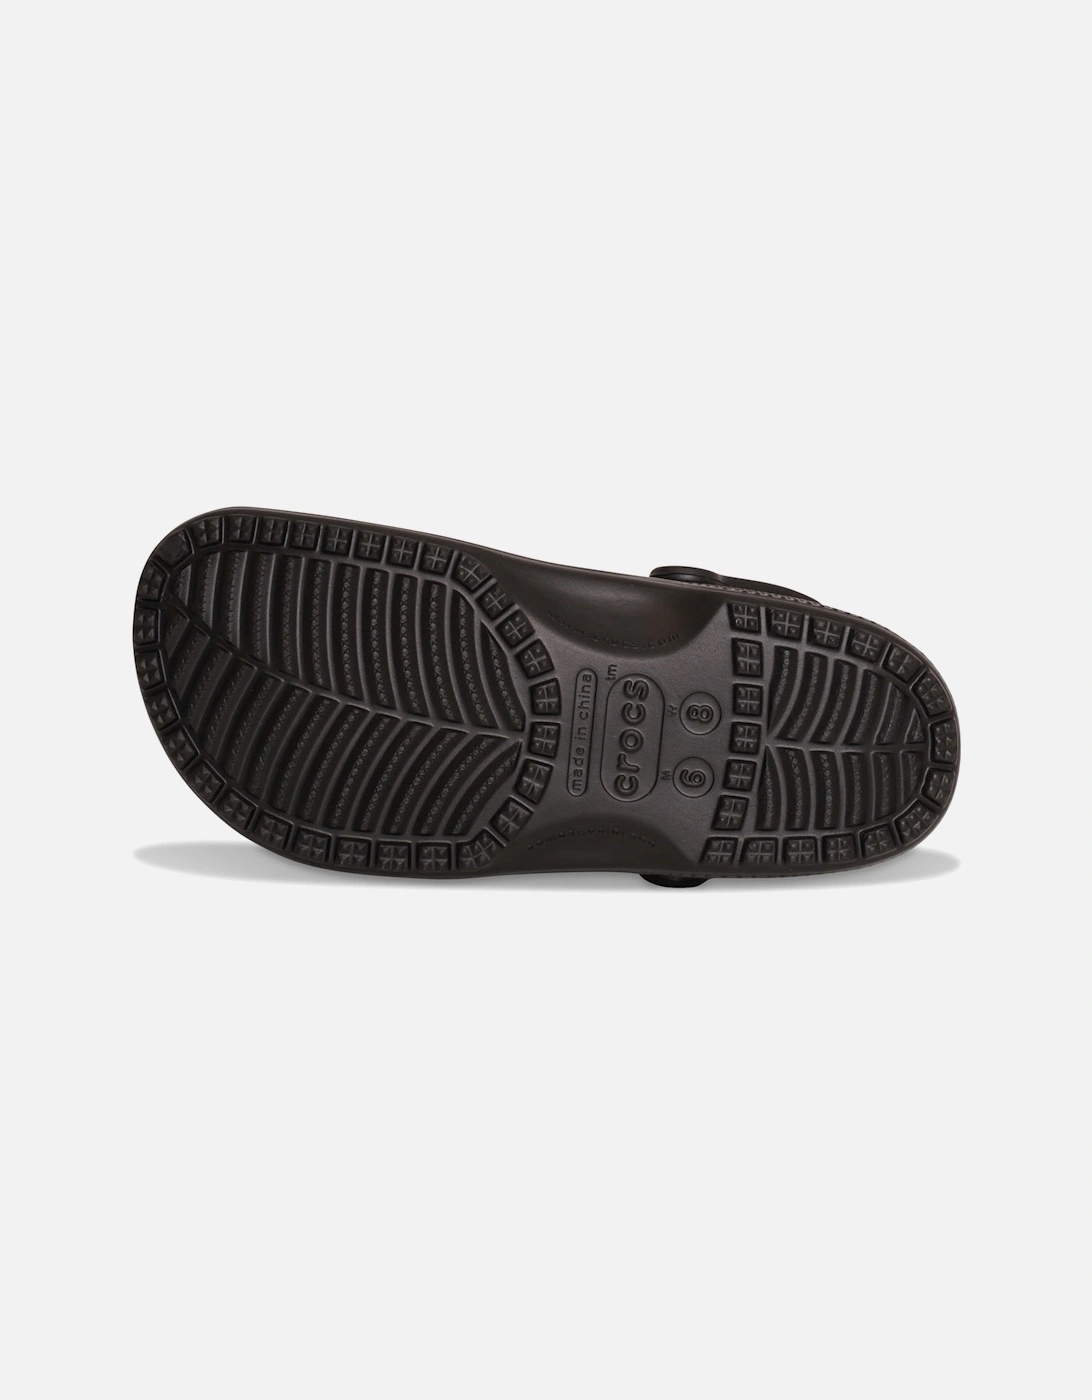 Unisex Adult Classic Clog Sandals (Black)